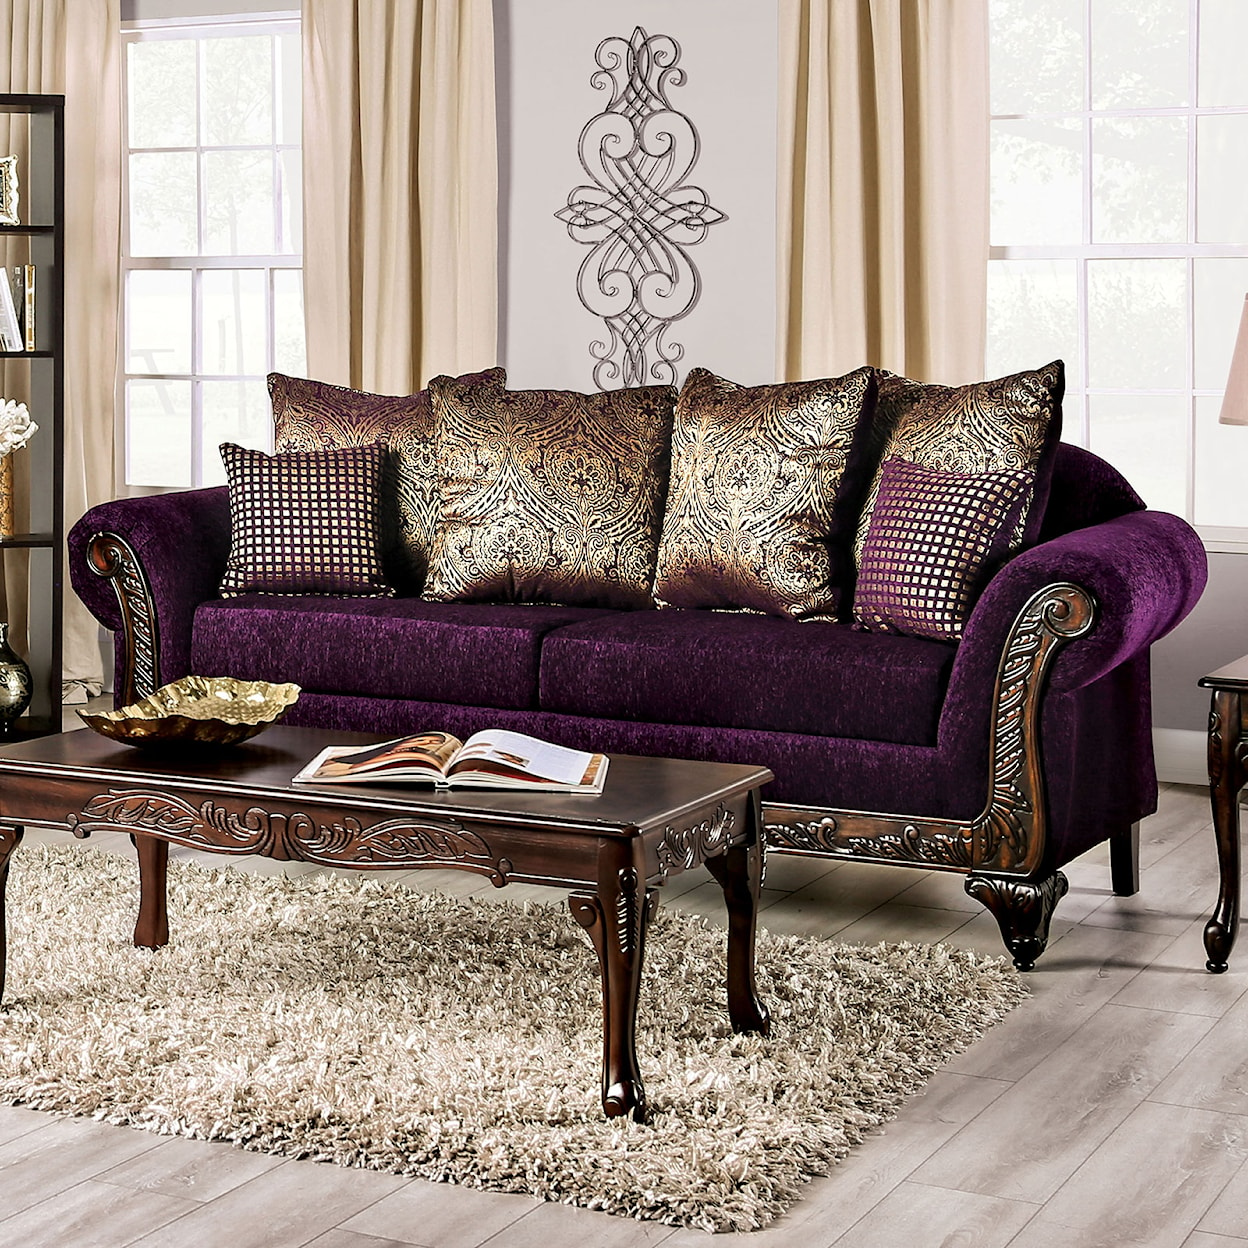 Furniture of America Casilda Sofa